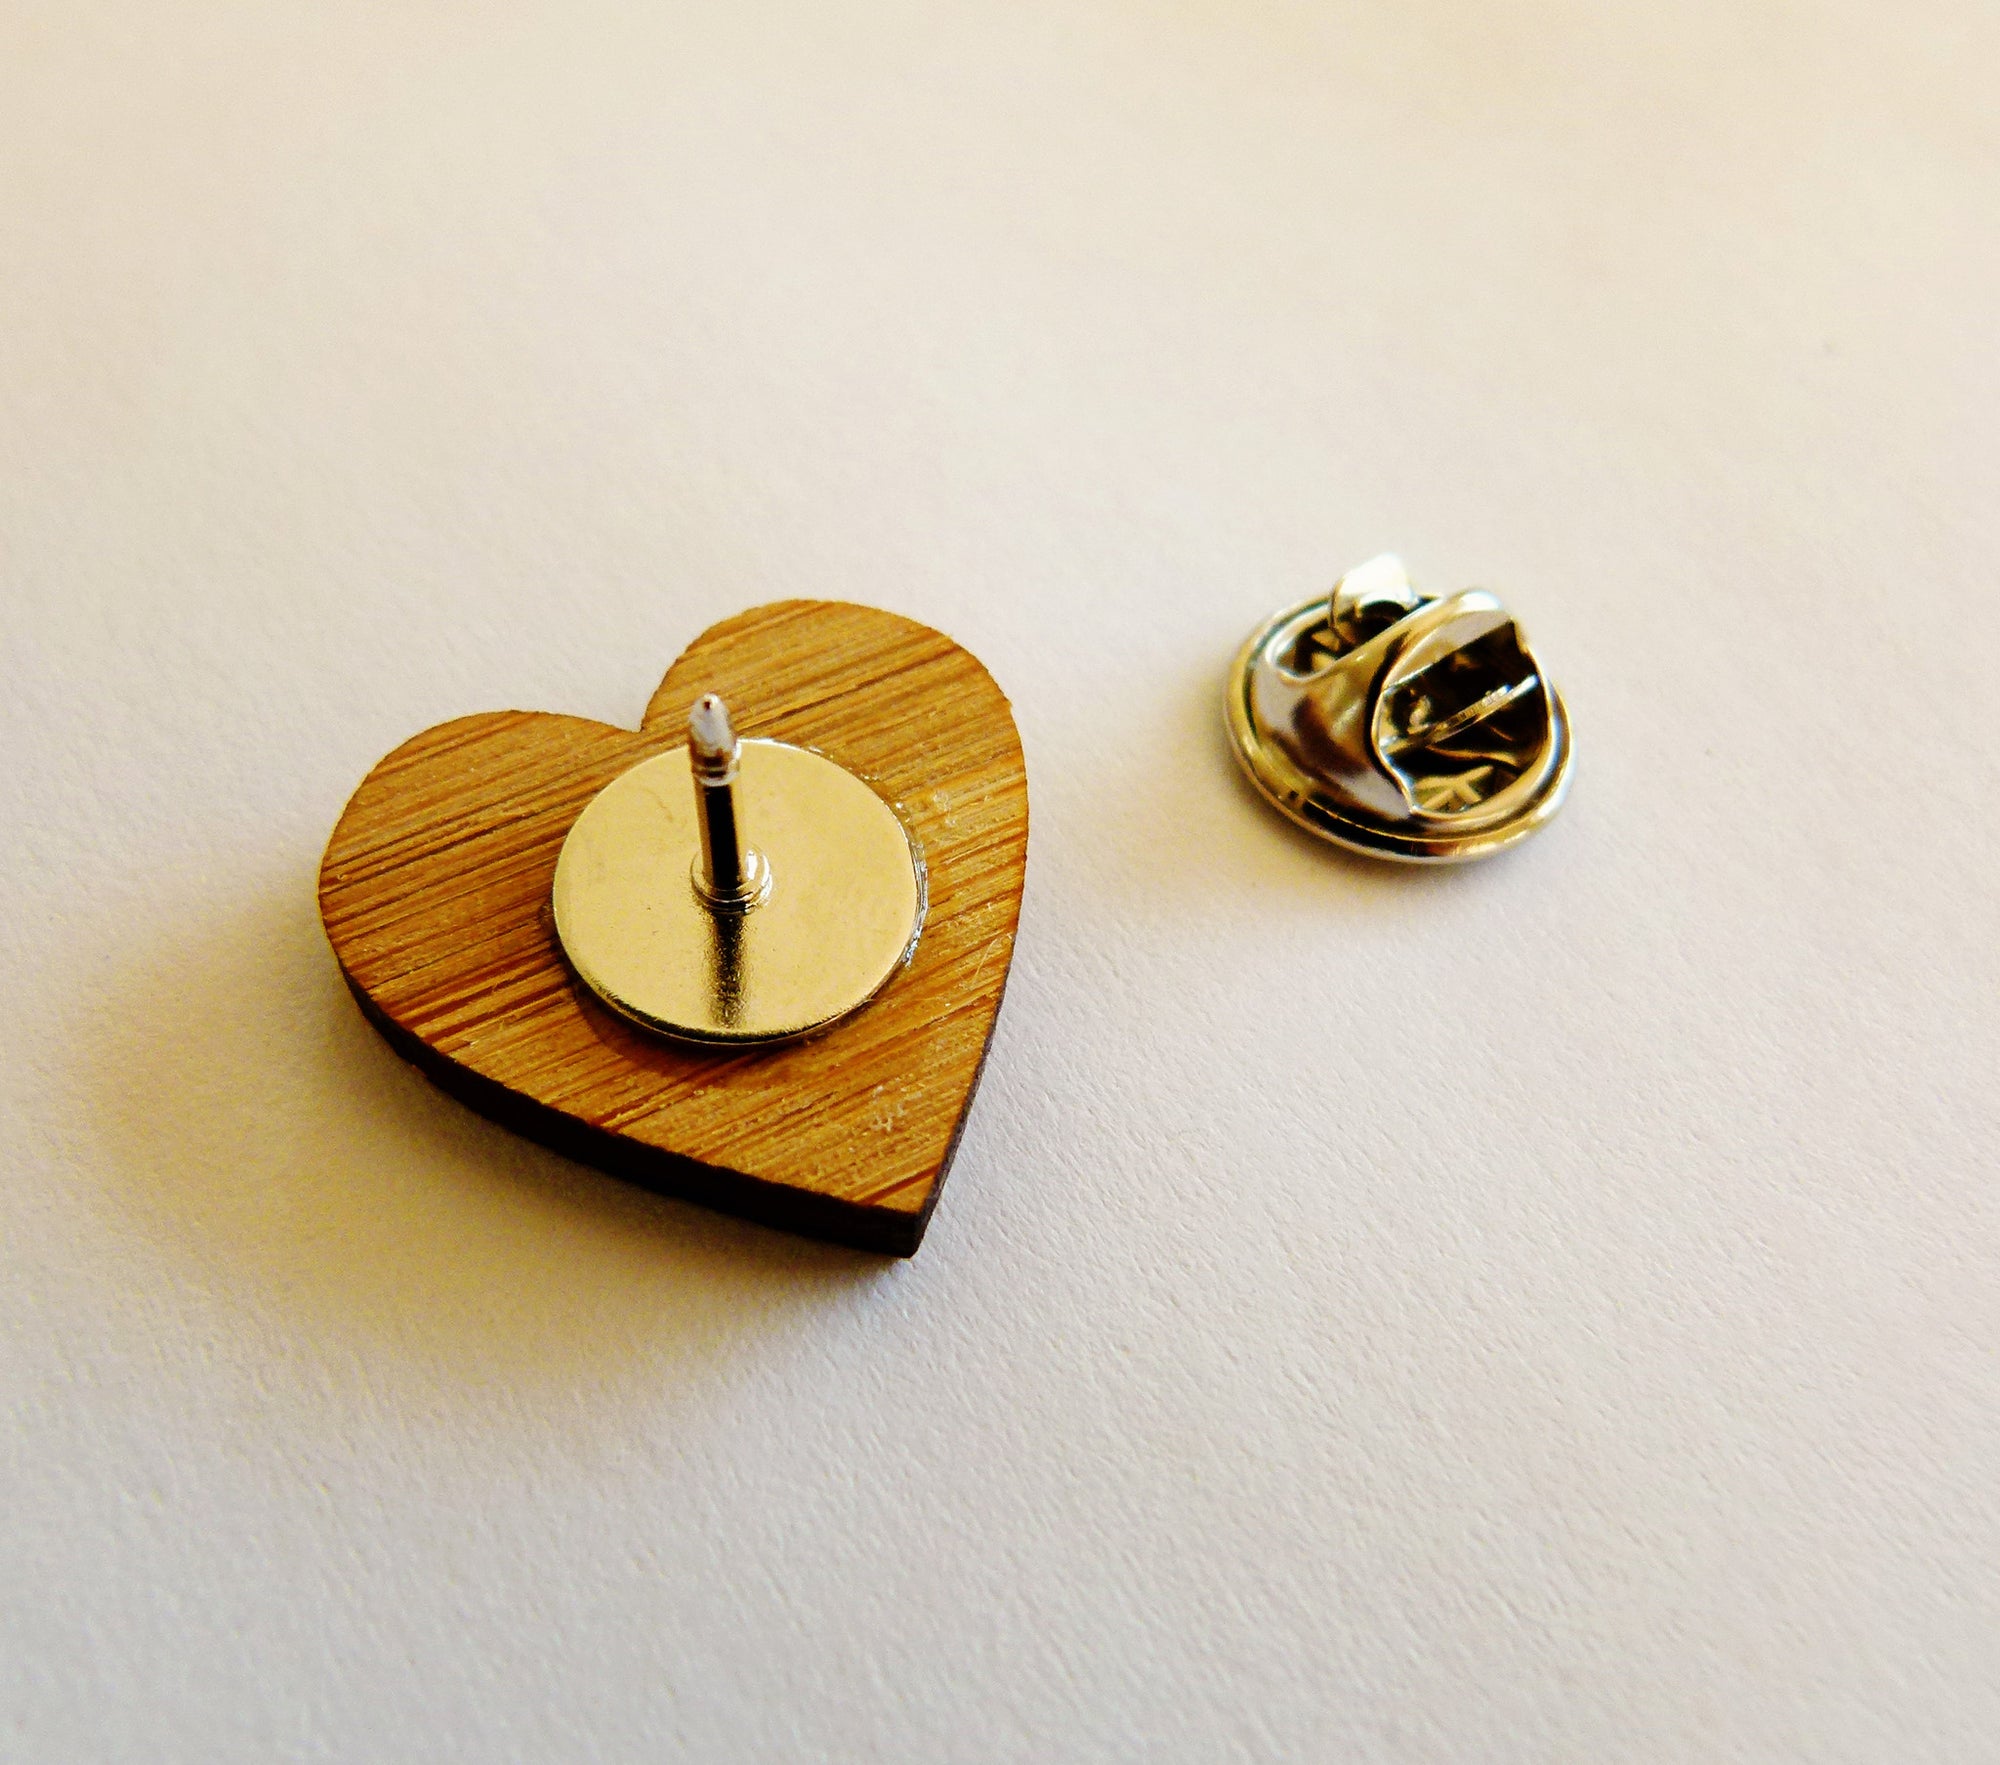 Tie pin - jewellery - eco friendly - sustainable jewelry - jewelry - One Happy Leaf